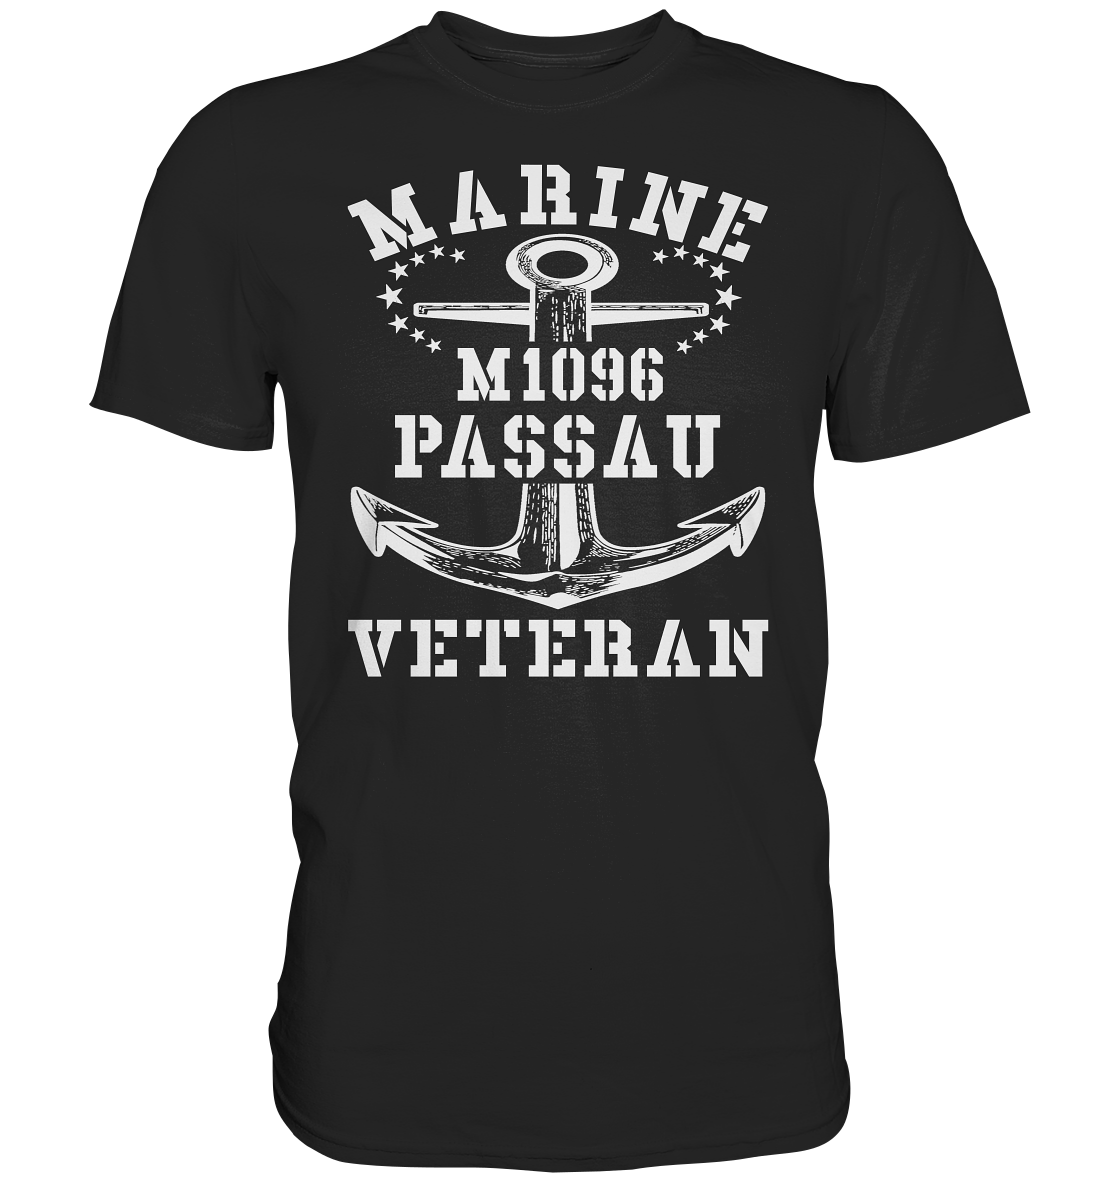 M1096 PASSAU Marine Veteran - Premium Shirt